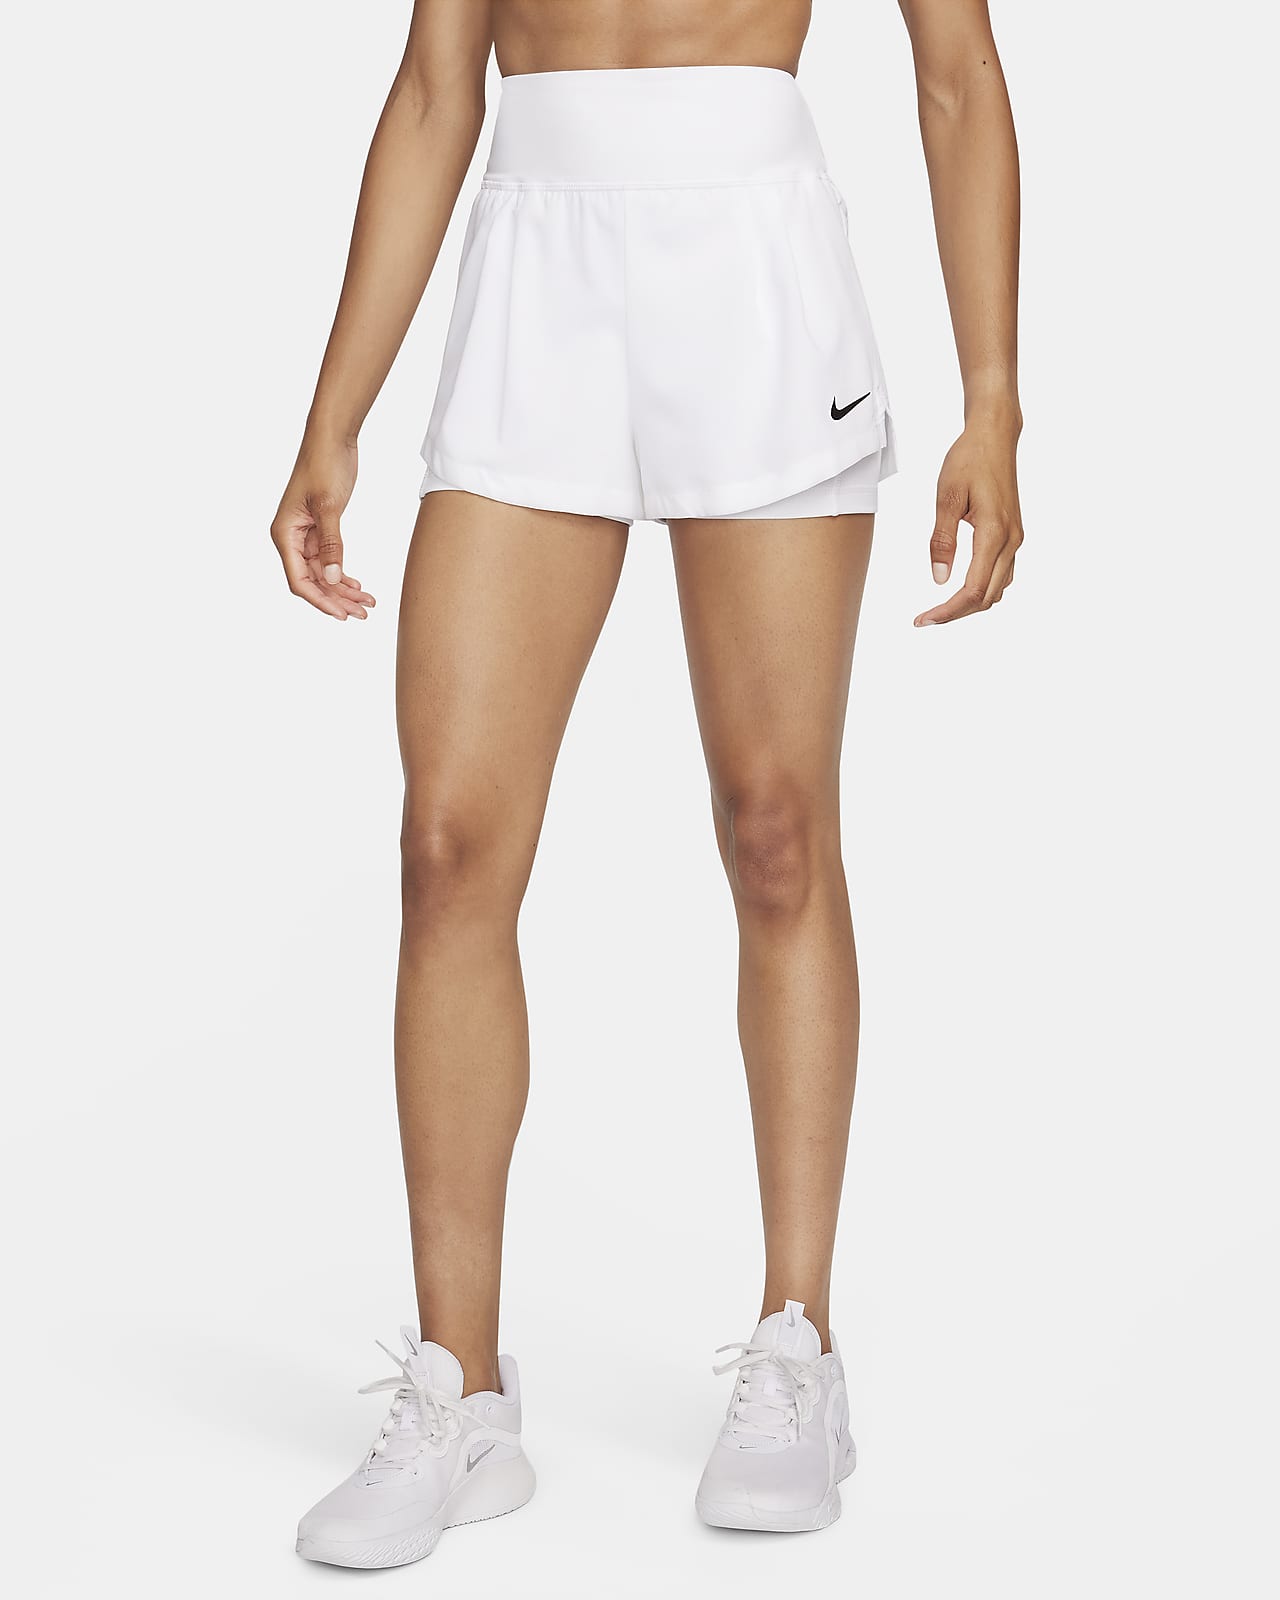 Shorts Nike Dri-FIT Advantage Feminino - Compre Agora